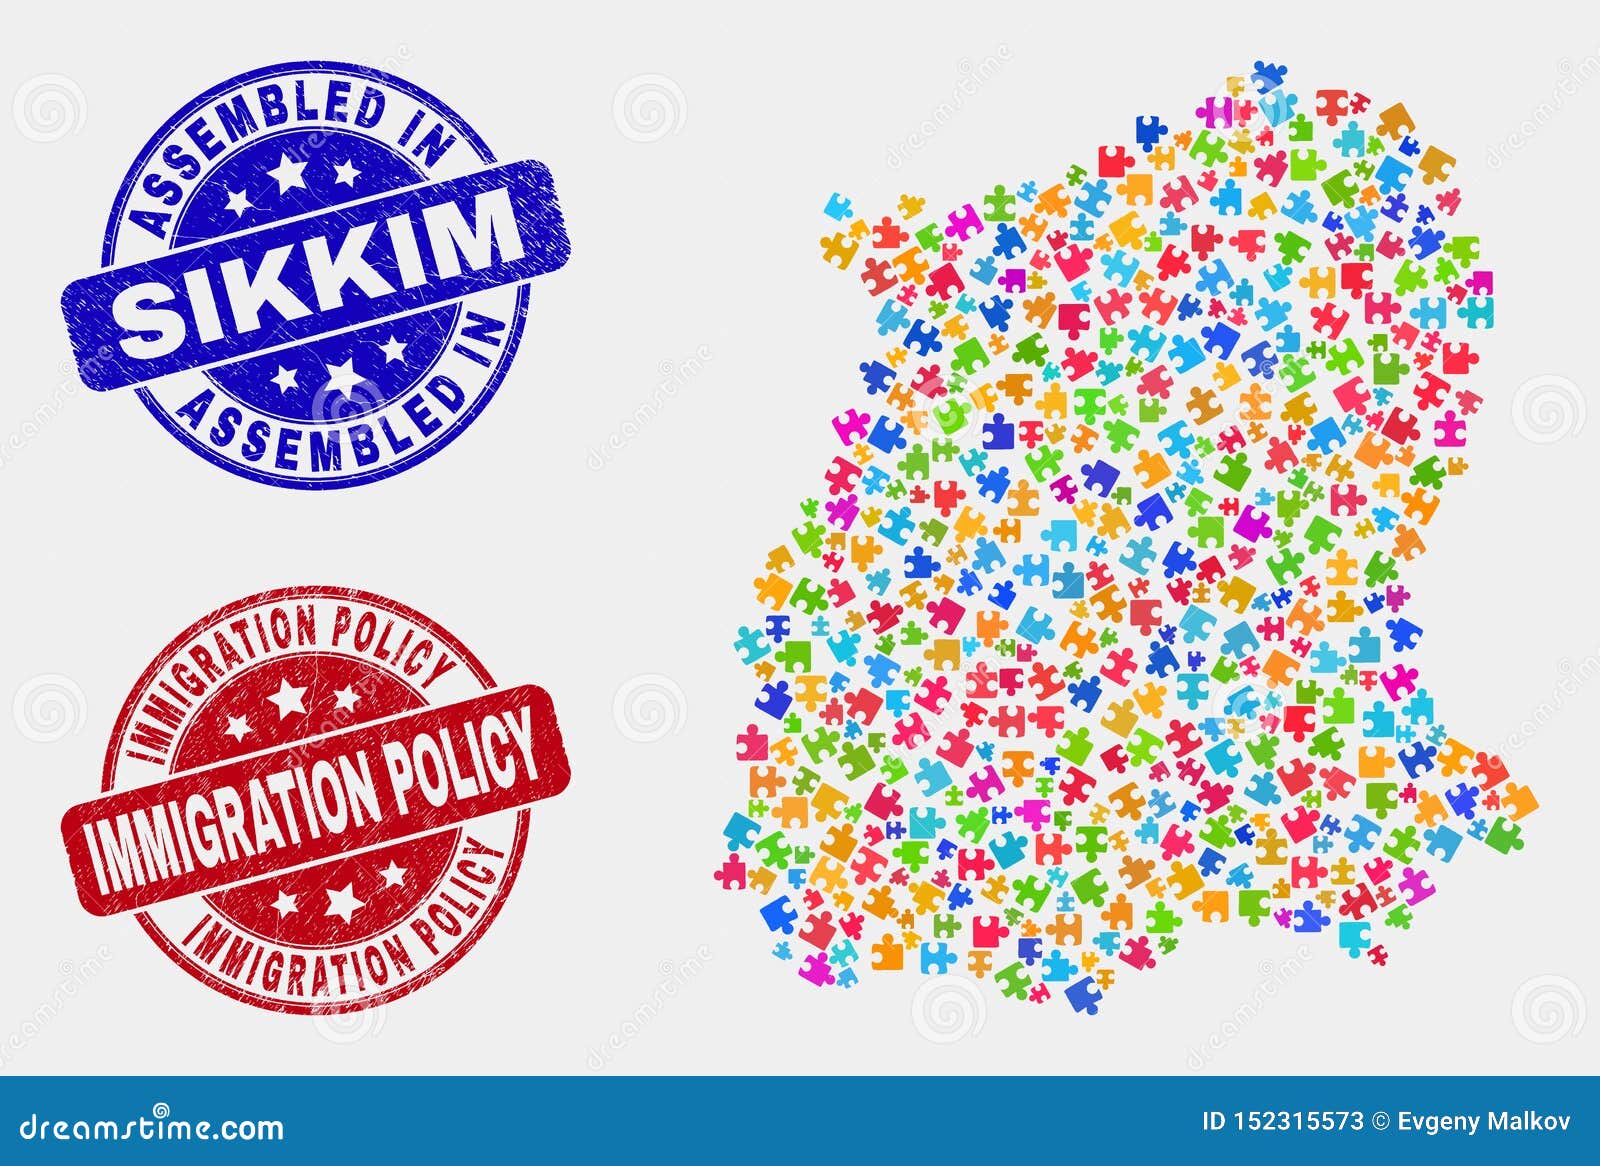 Mapa del estado de Sikkim del paquete y Grunge montados y sellos de la política en materia de inmigración. Mapa del estado de Sikkim del constructor y sello montado azul del sello, y sello del sello del grunge de la política en materia de inmigración Mosaico colorido del mapa del estado de Sikkim del vector de conectores enchufables